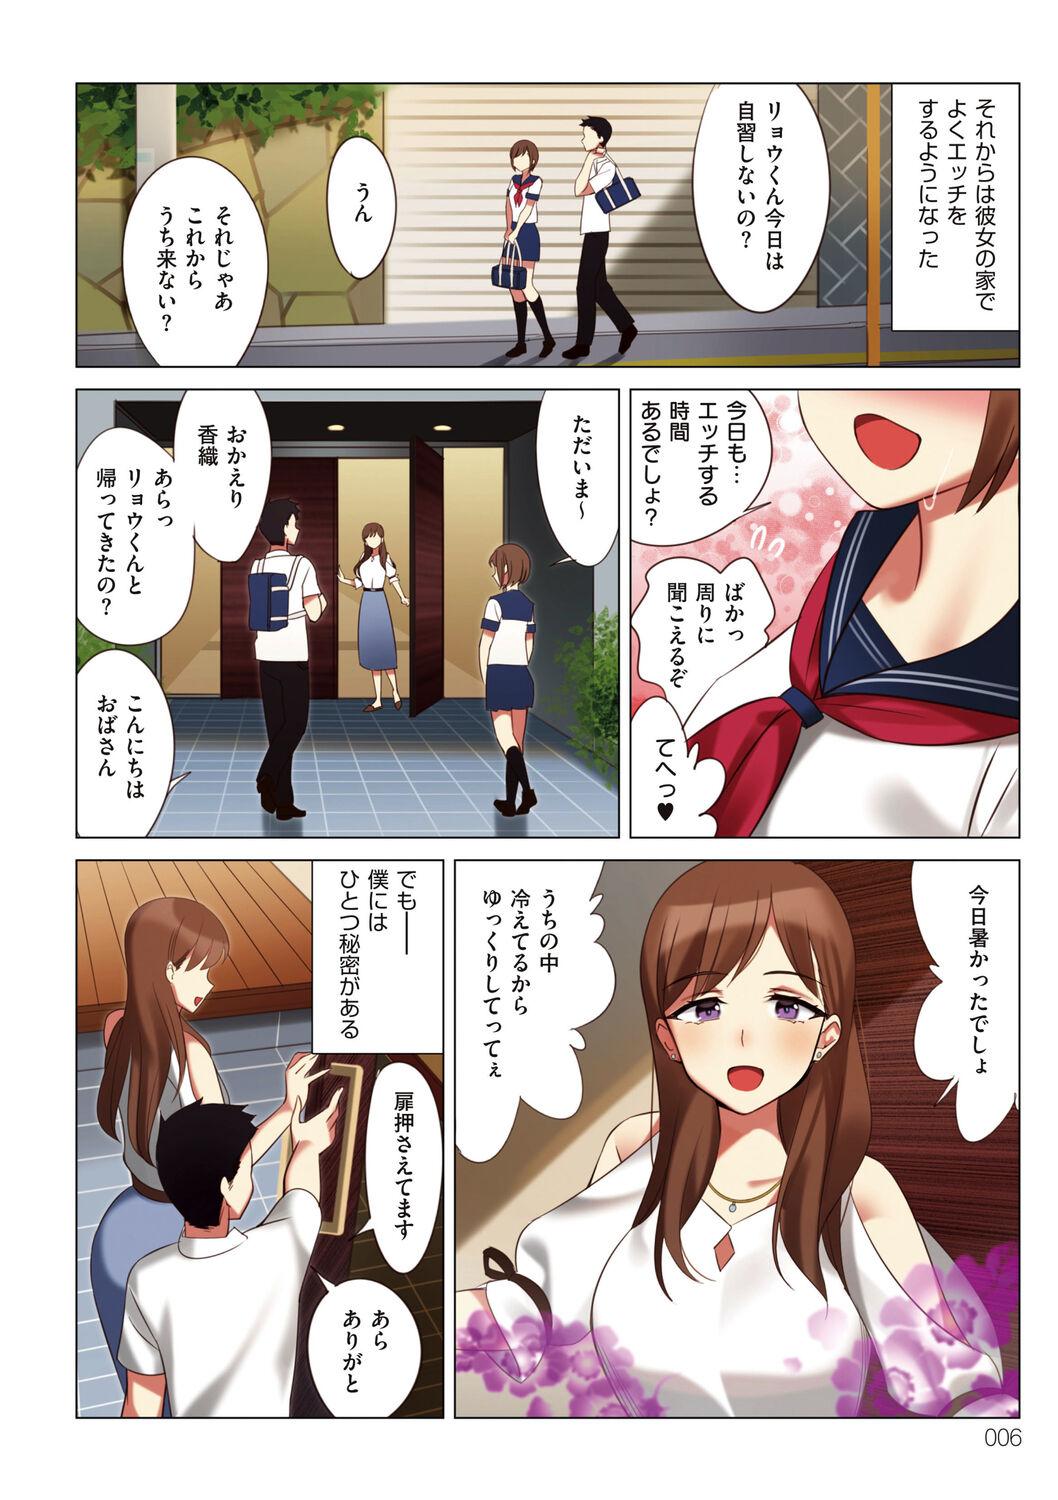 Abg Boku to Kanojo no Okaa-san Girlsfucking - Page 6